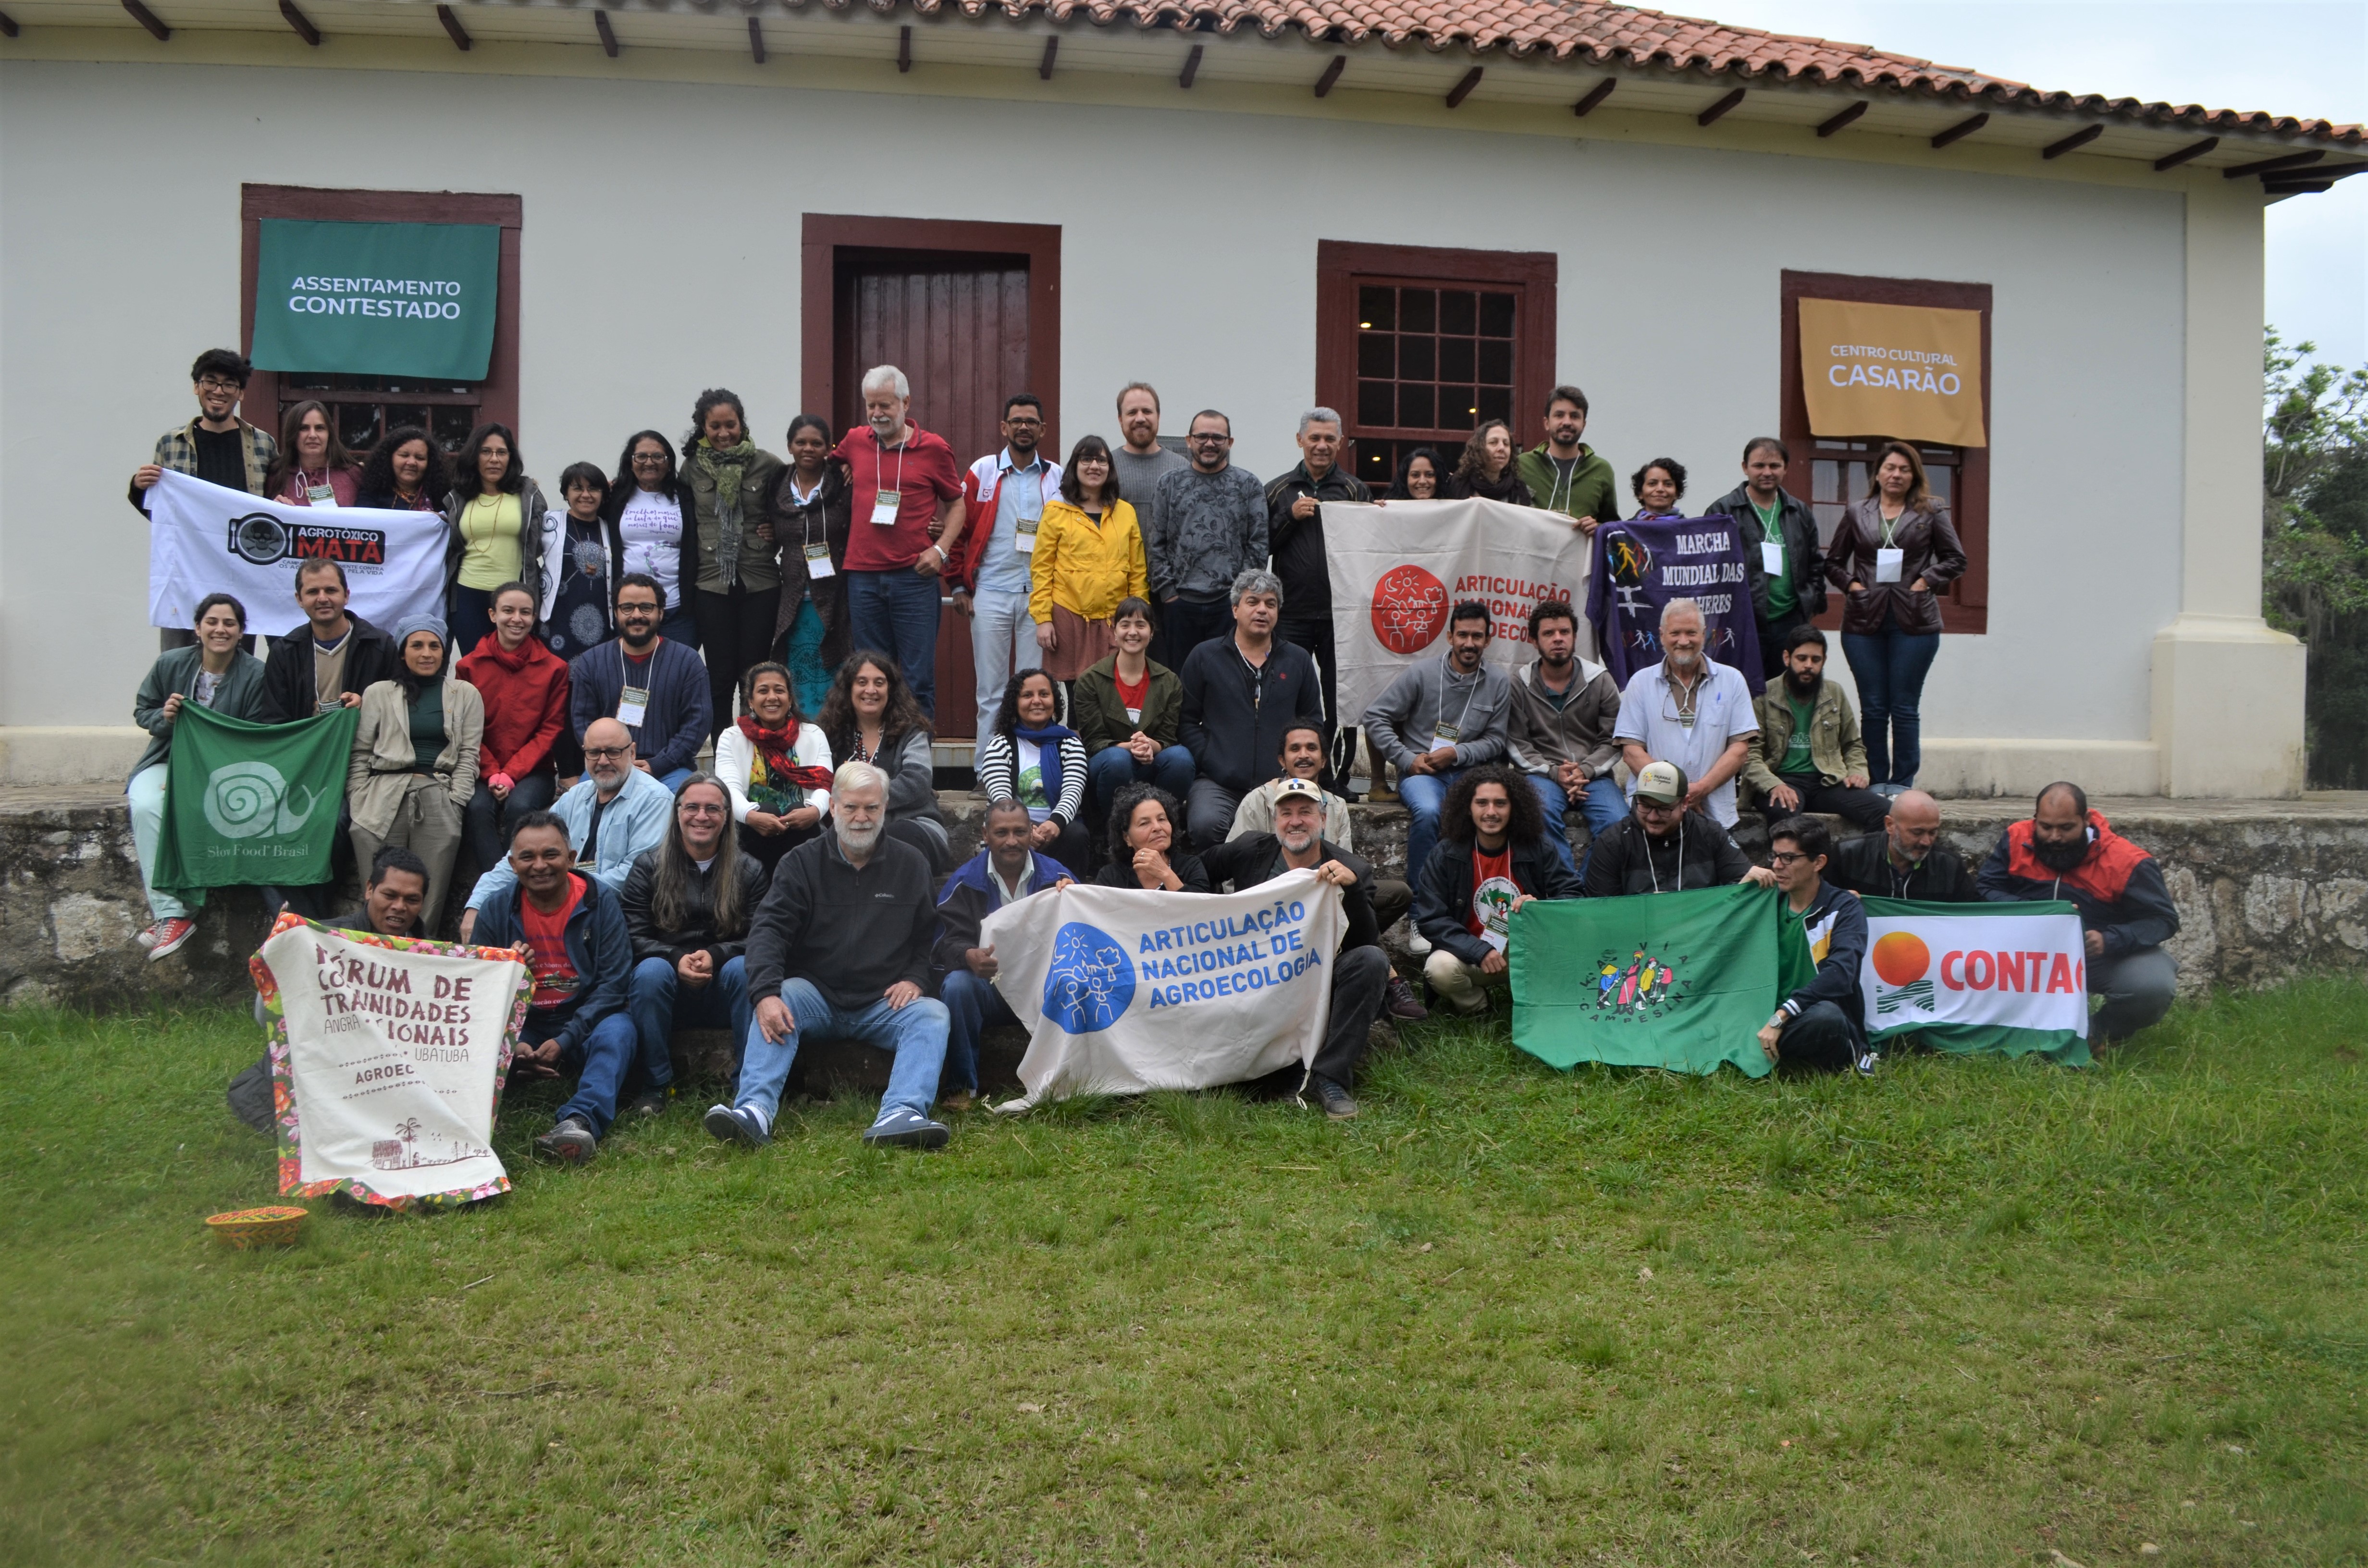 Seminário foi realizado no Assentamento Contestado, na Lapa. Foto: Márcio de Souza Andrade